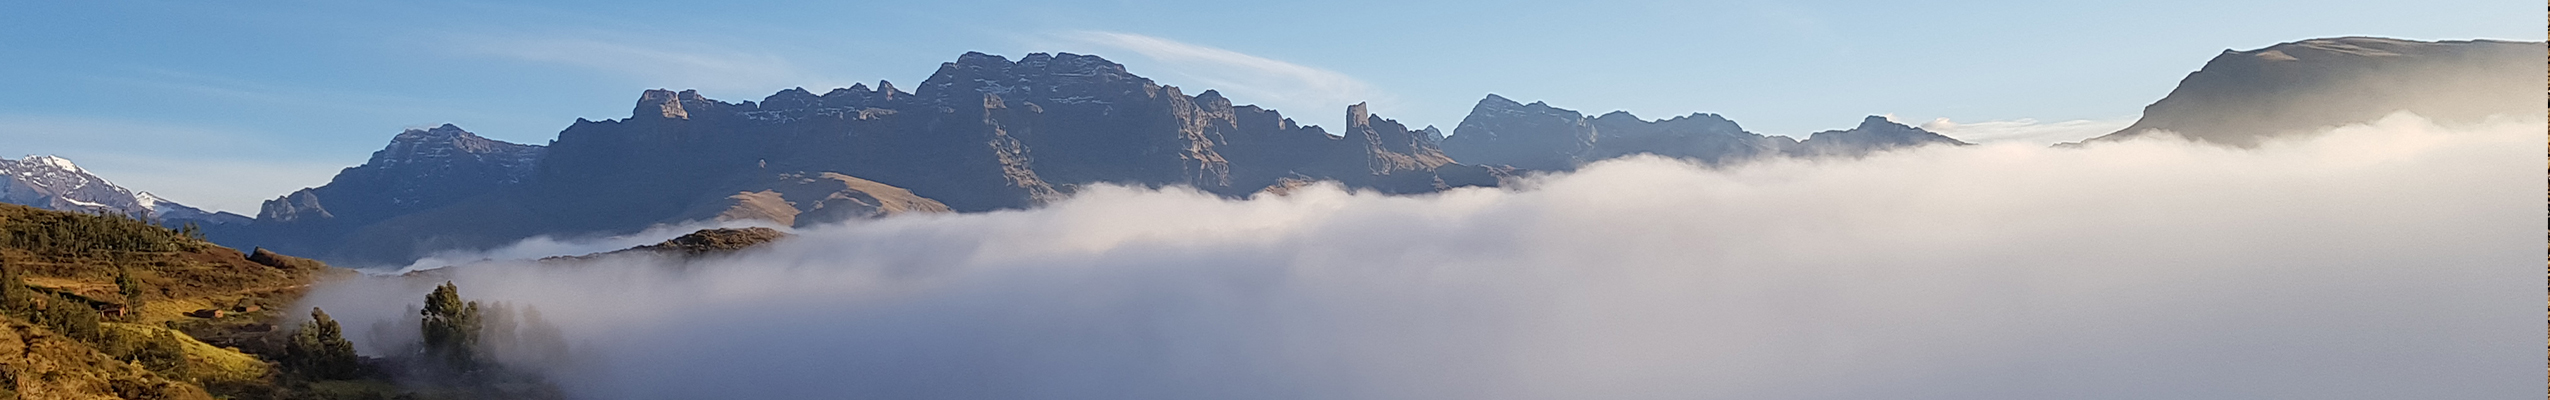 Peru Treks Clouds